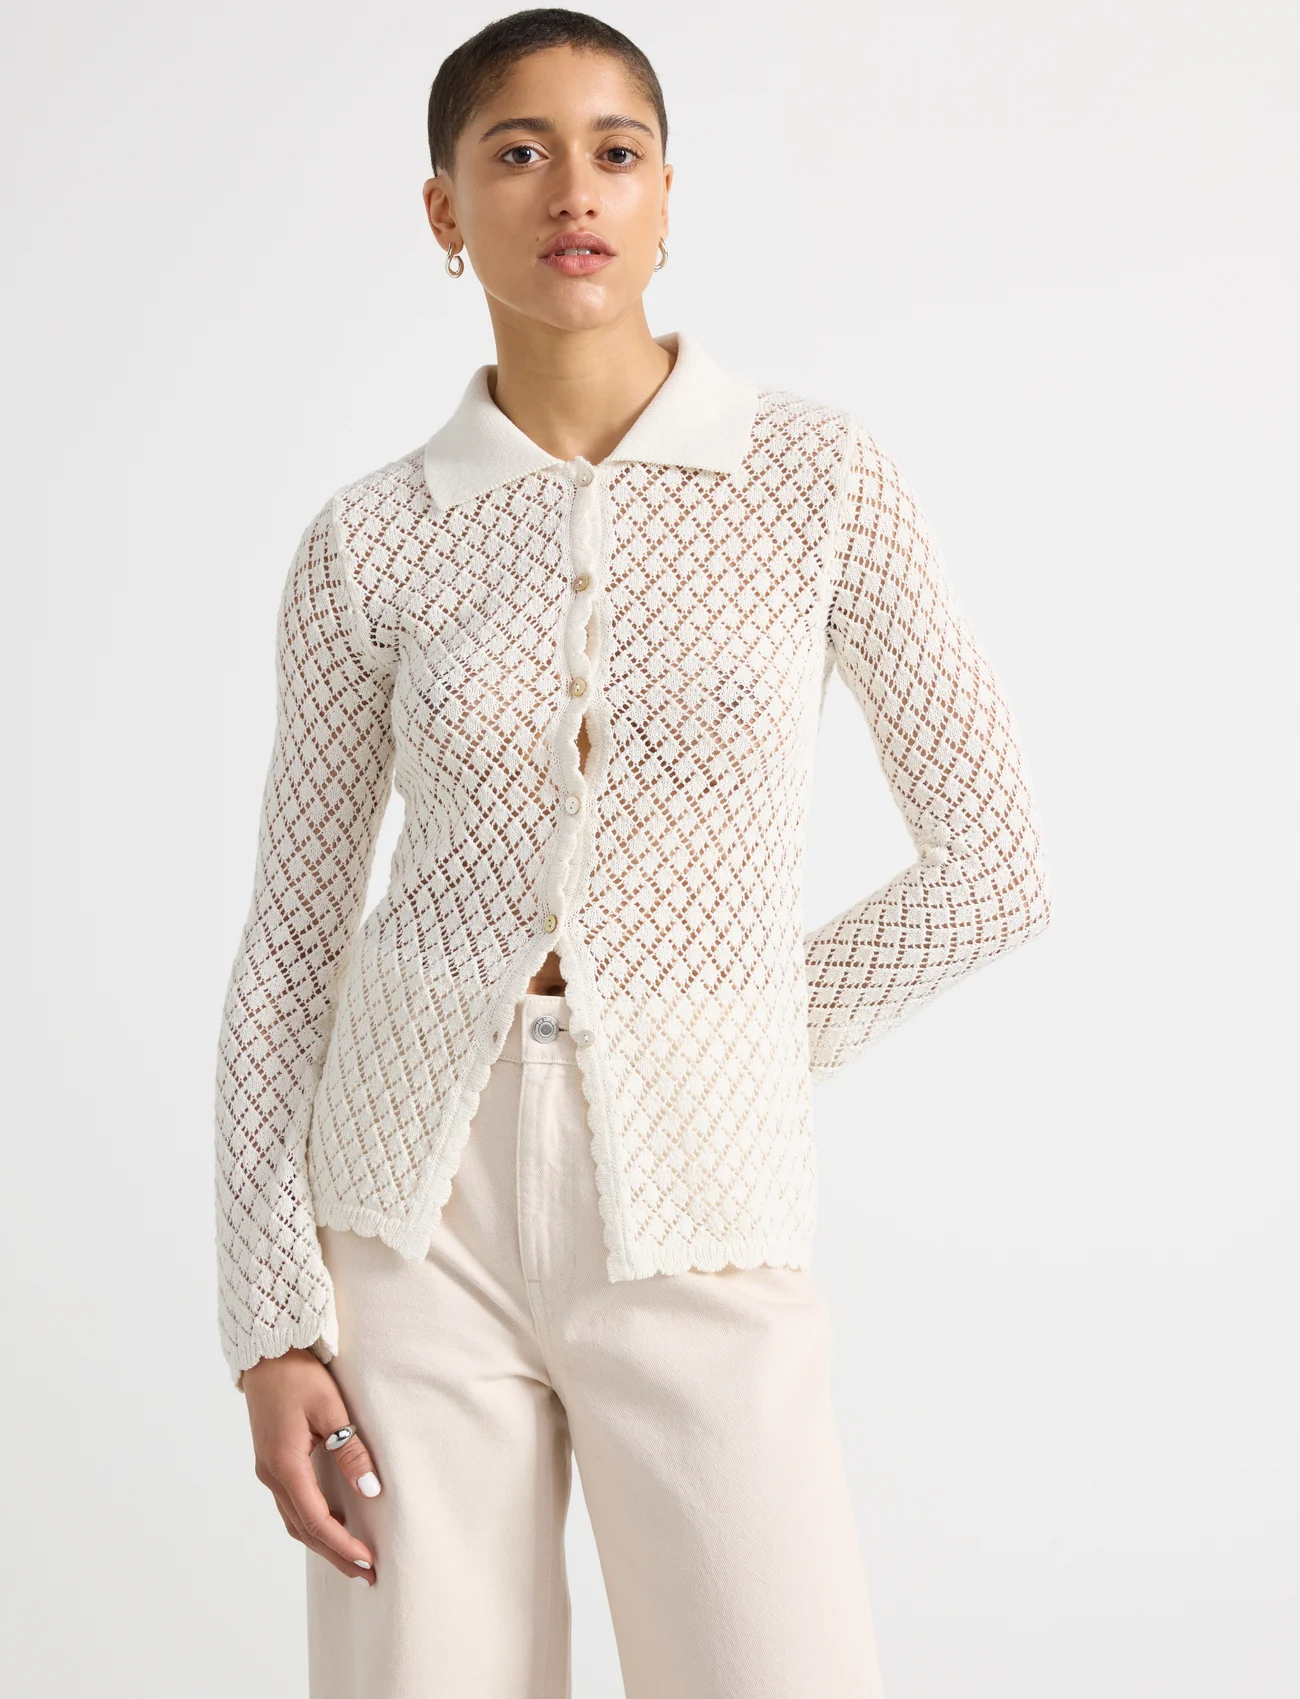 Lindex - Shirt knitted Pegha - pitkähihaiset kauluspaidat - off white - 0